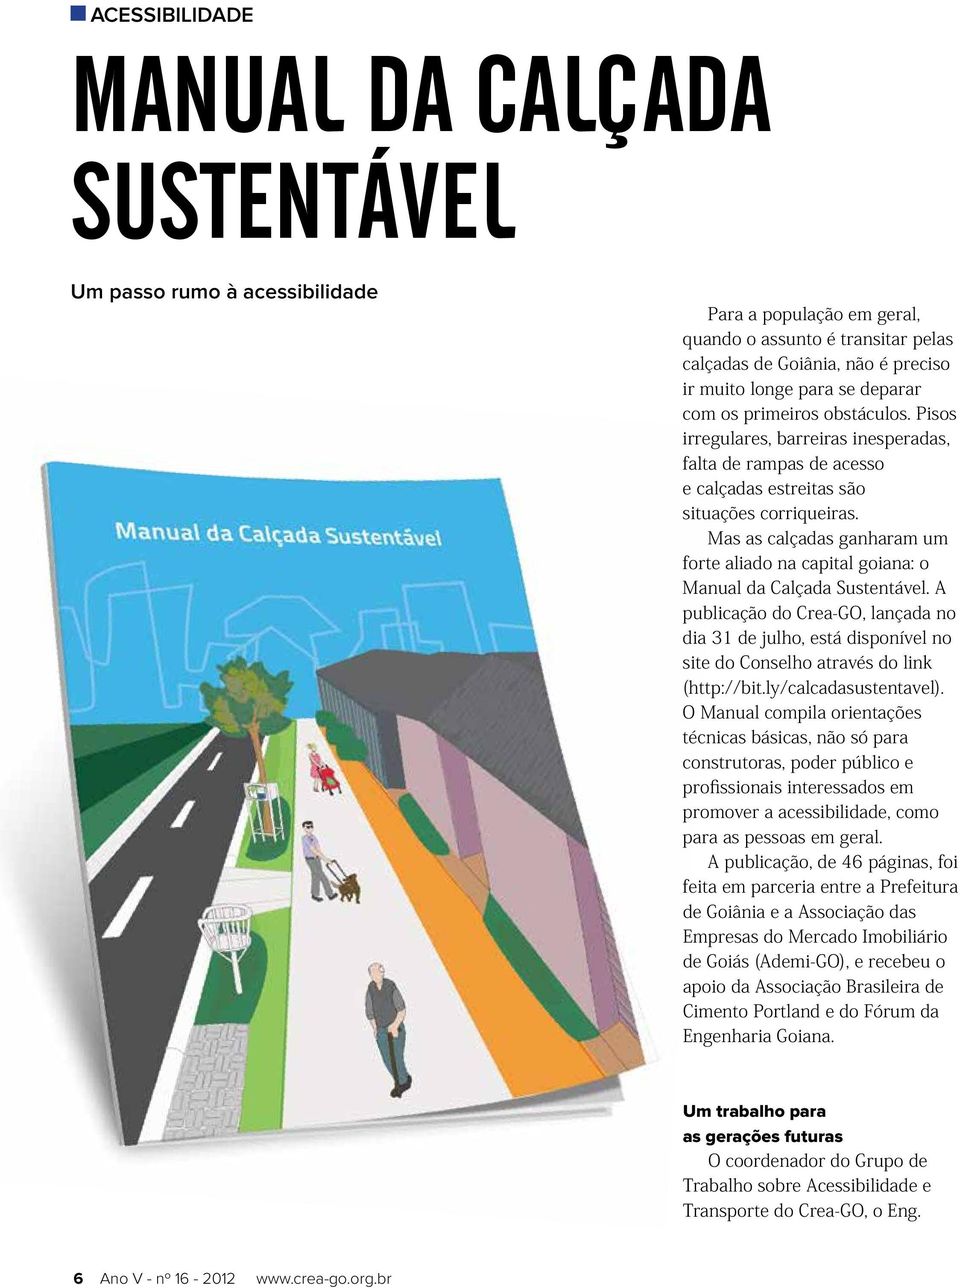 Mas as calçadas ganharam um forte aliado na capital goiana: o Manual da Calçada Sustentável.